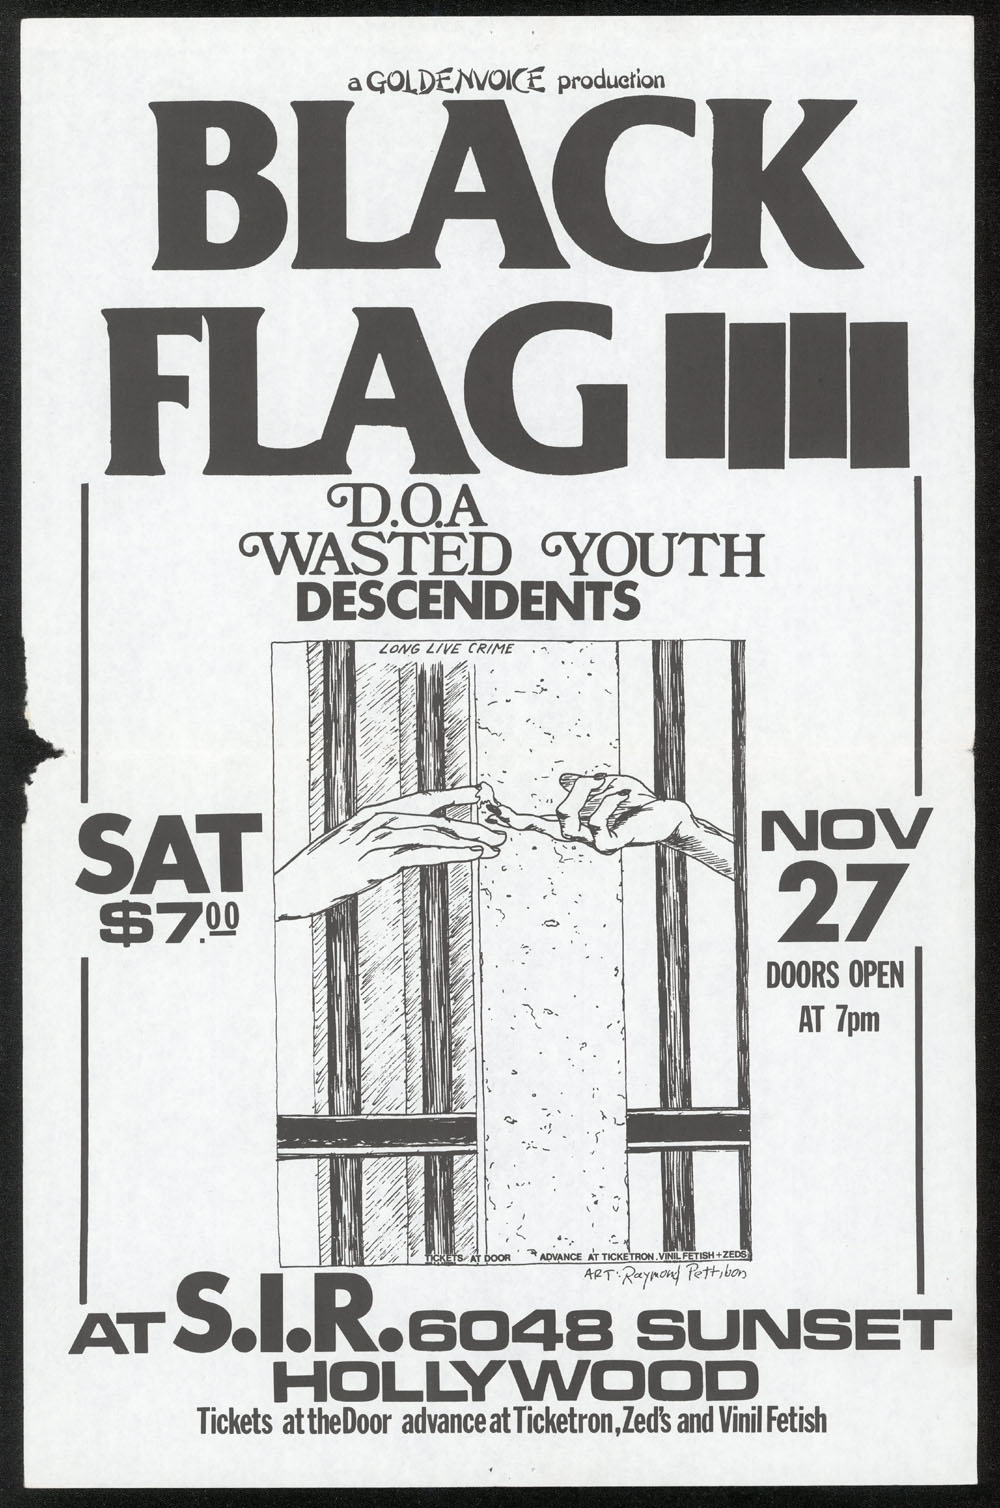 black flag 1982 demos zip